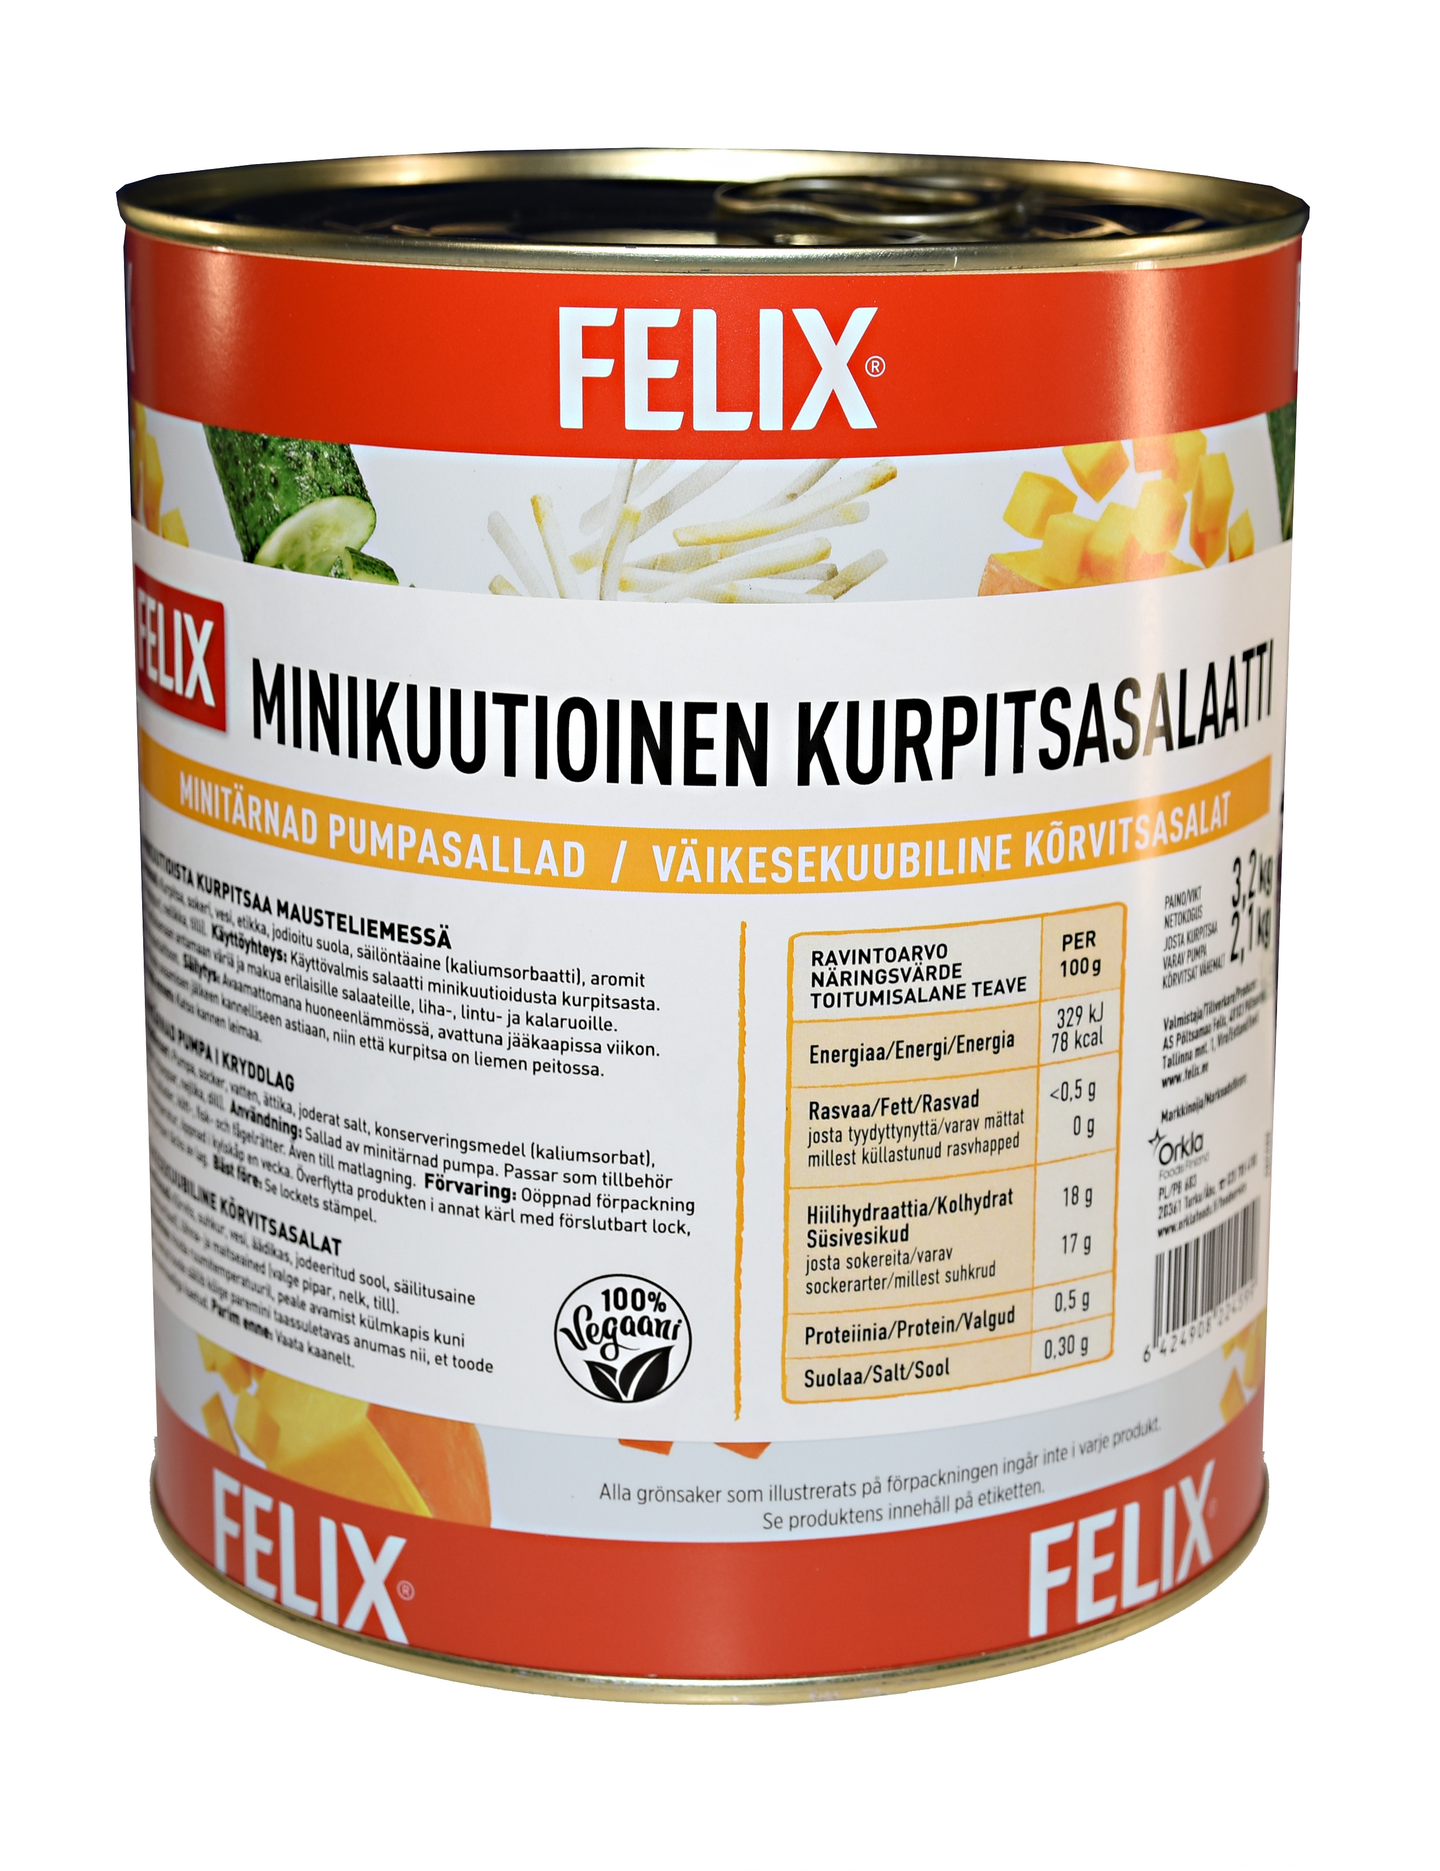 Felix minikuutioinen kurpitsasalaatti 3,2kg/2,1kg